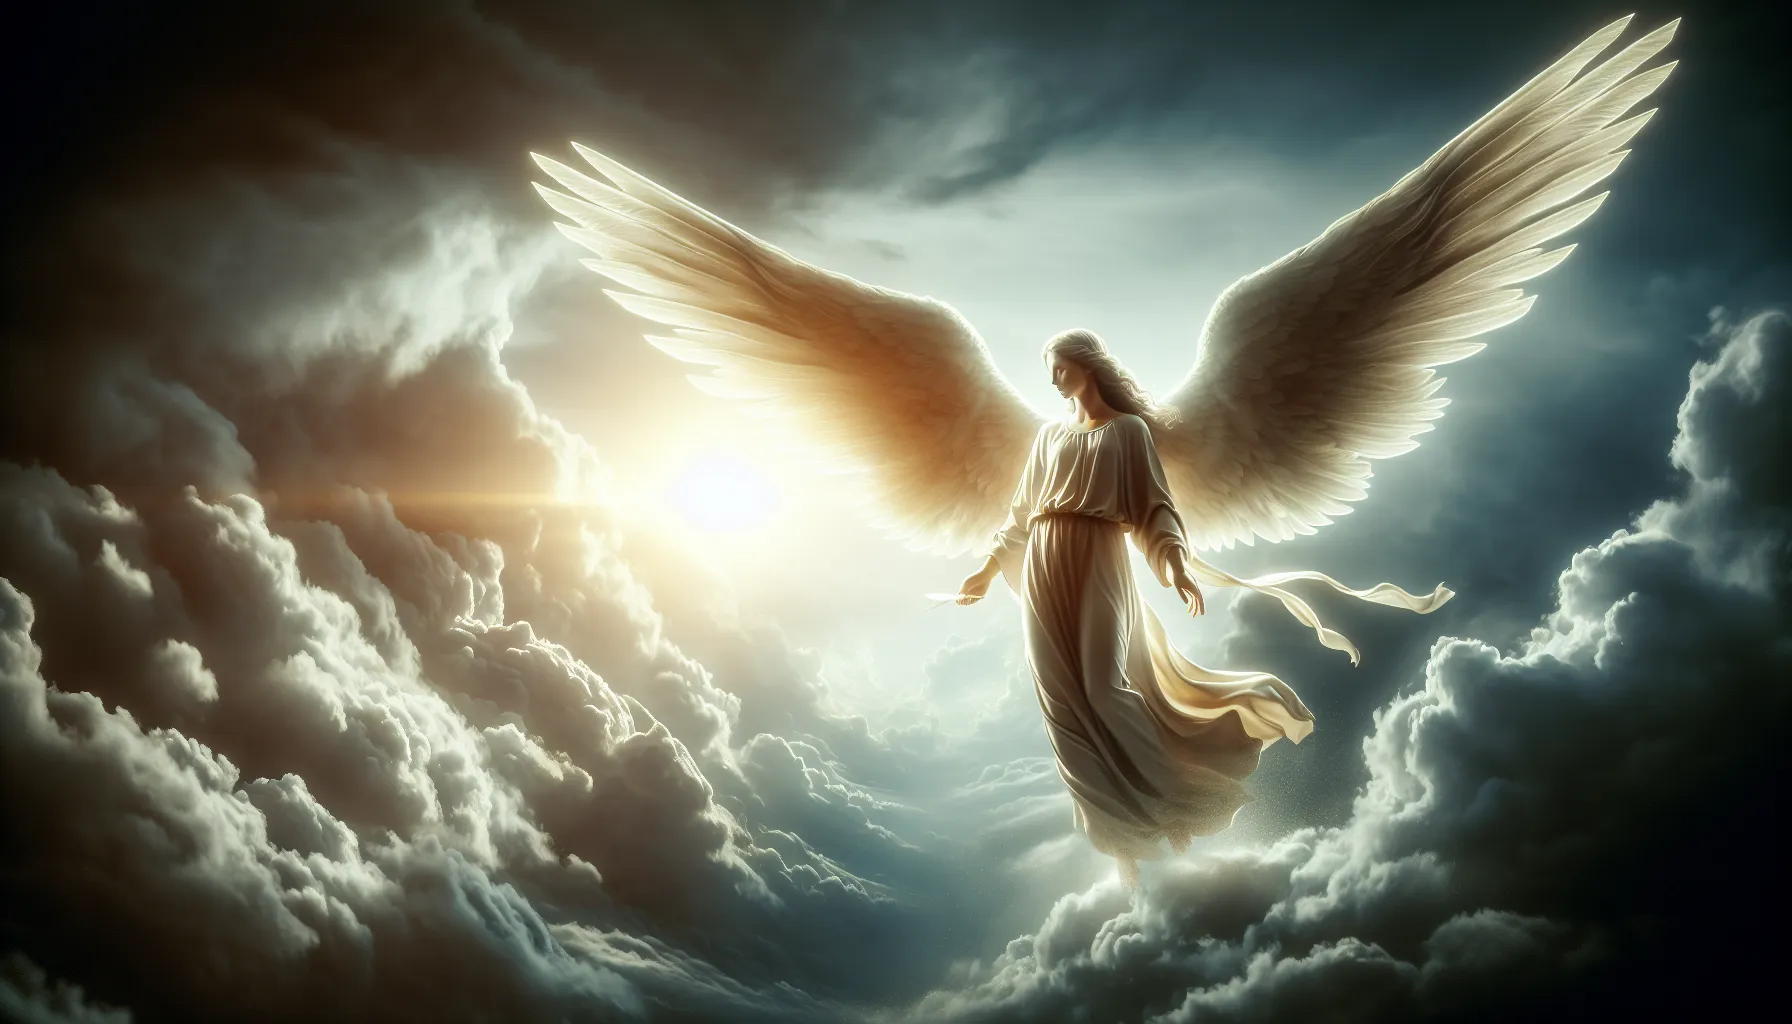 Imagen de angelical presencia en el cielo, acorde al tema de las enseñanzas bíblicas sobre ángeles en el cristianismo.